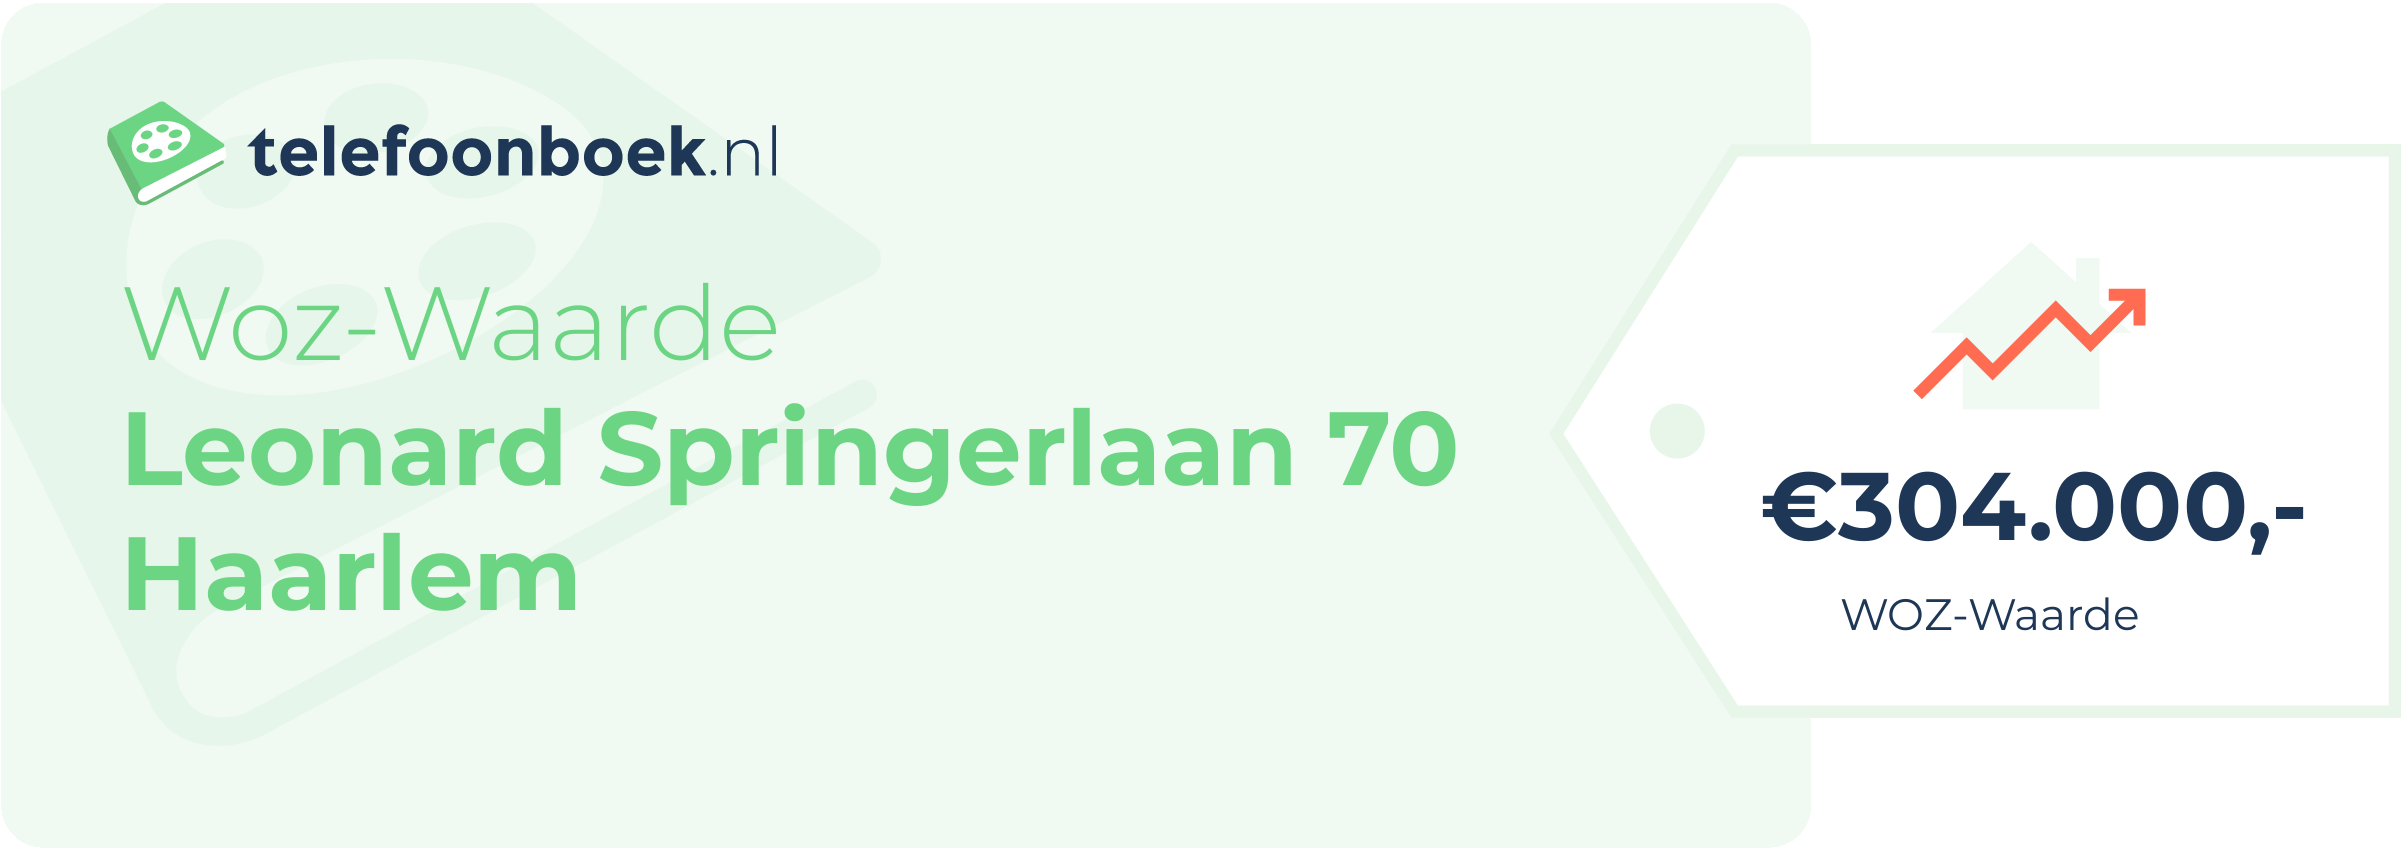 WOZ-waarde Leonard Springerlaan 70 Haarlem